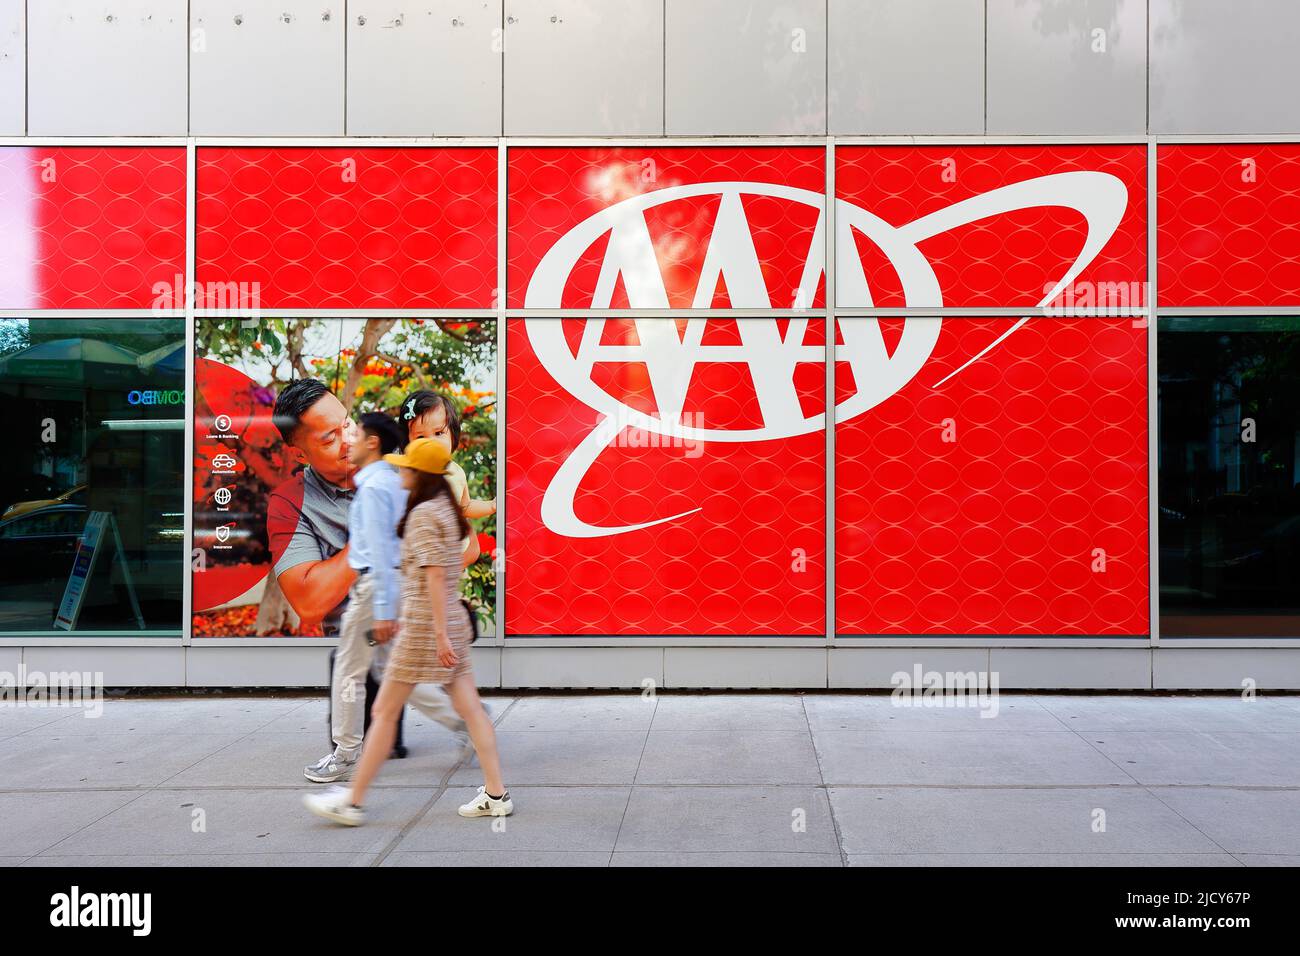 Un couple asiatique passe devant un grand logo AAA à l'extérieur de l'agence d'assurance American automobile Association, 1881 Broadway, New York, NY. Banque D'Images